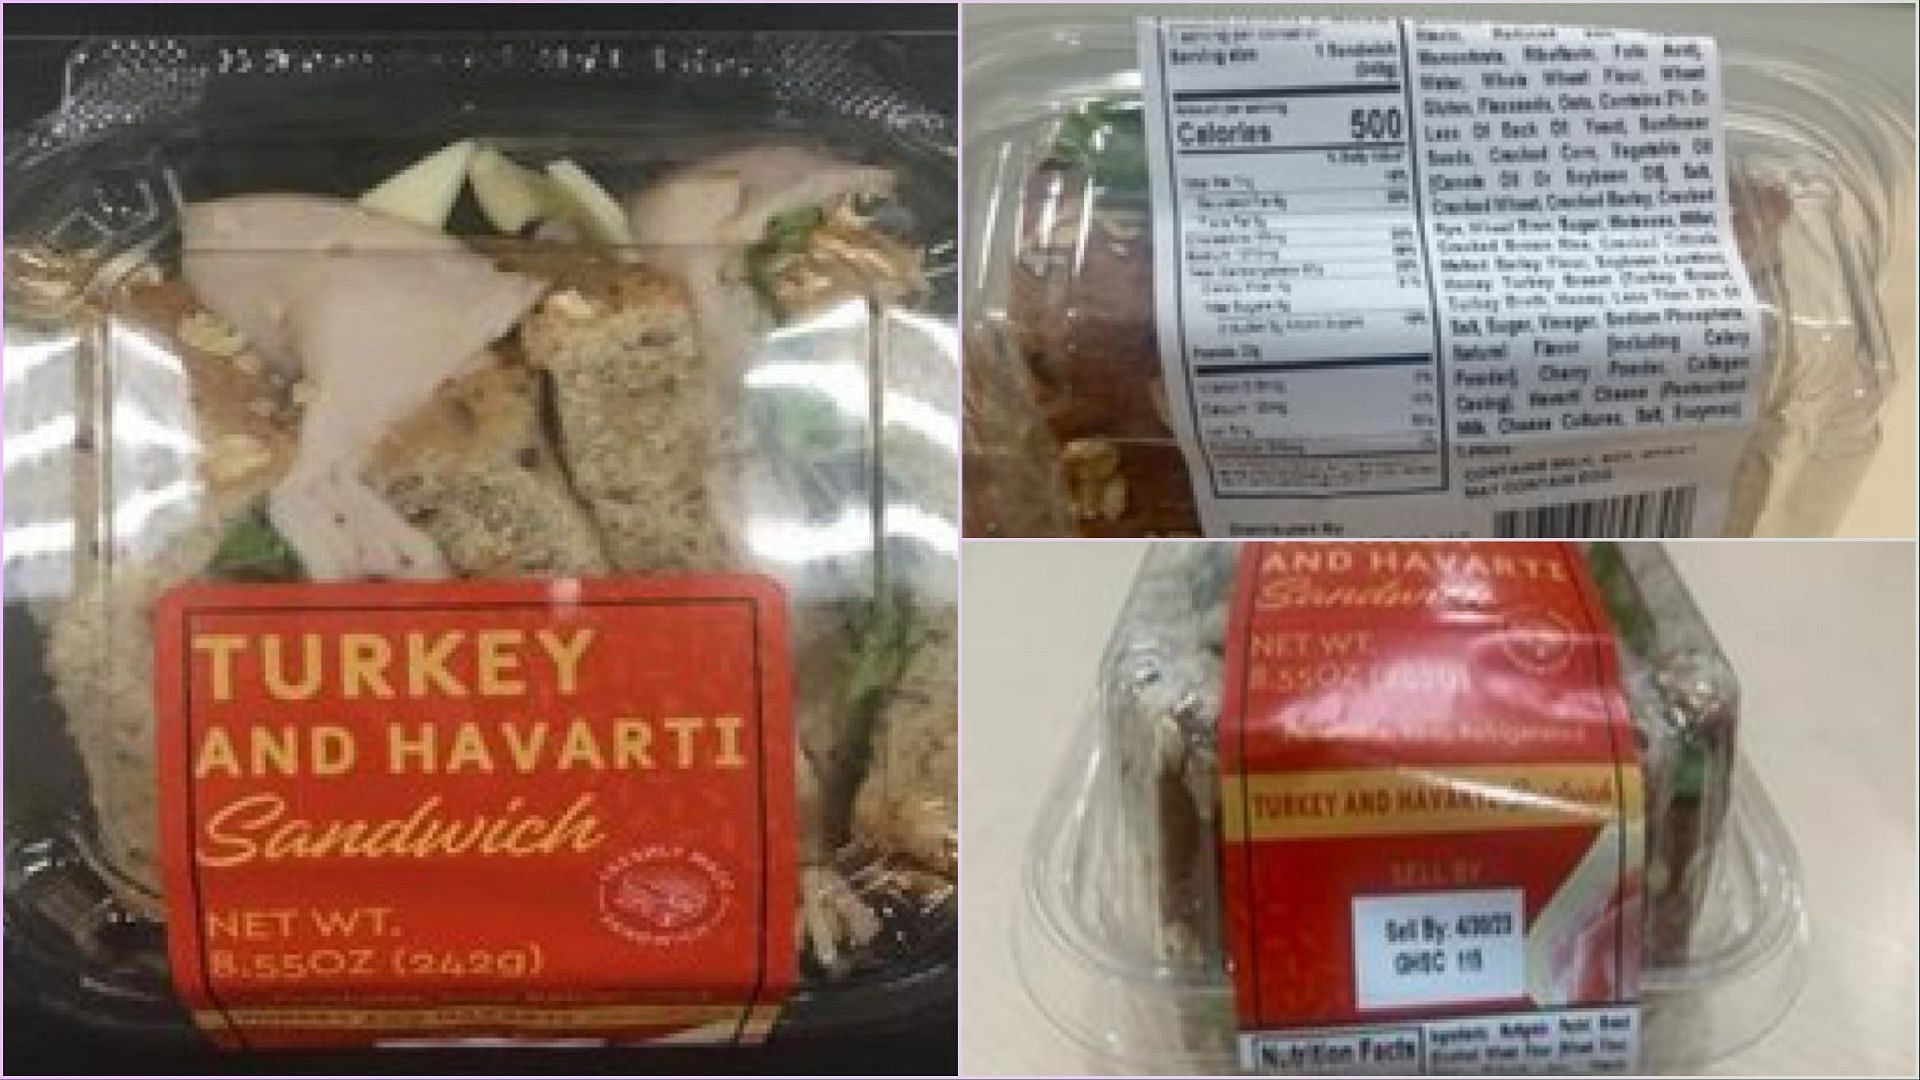 The recalled Turkey and Havarti sandwiches contain sesame in the bread (Image via FDA)